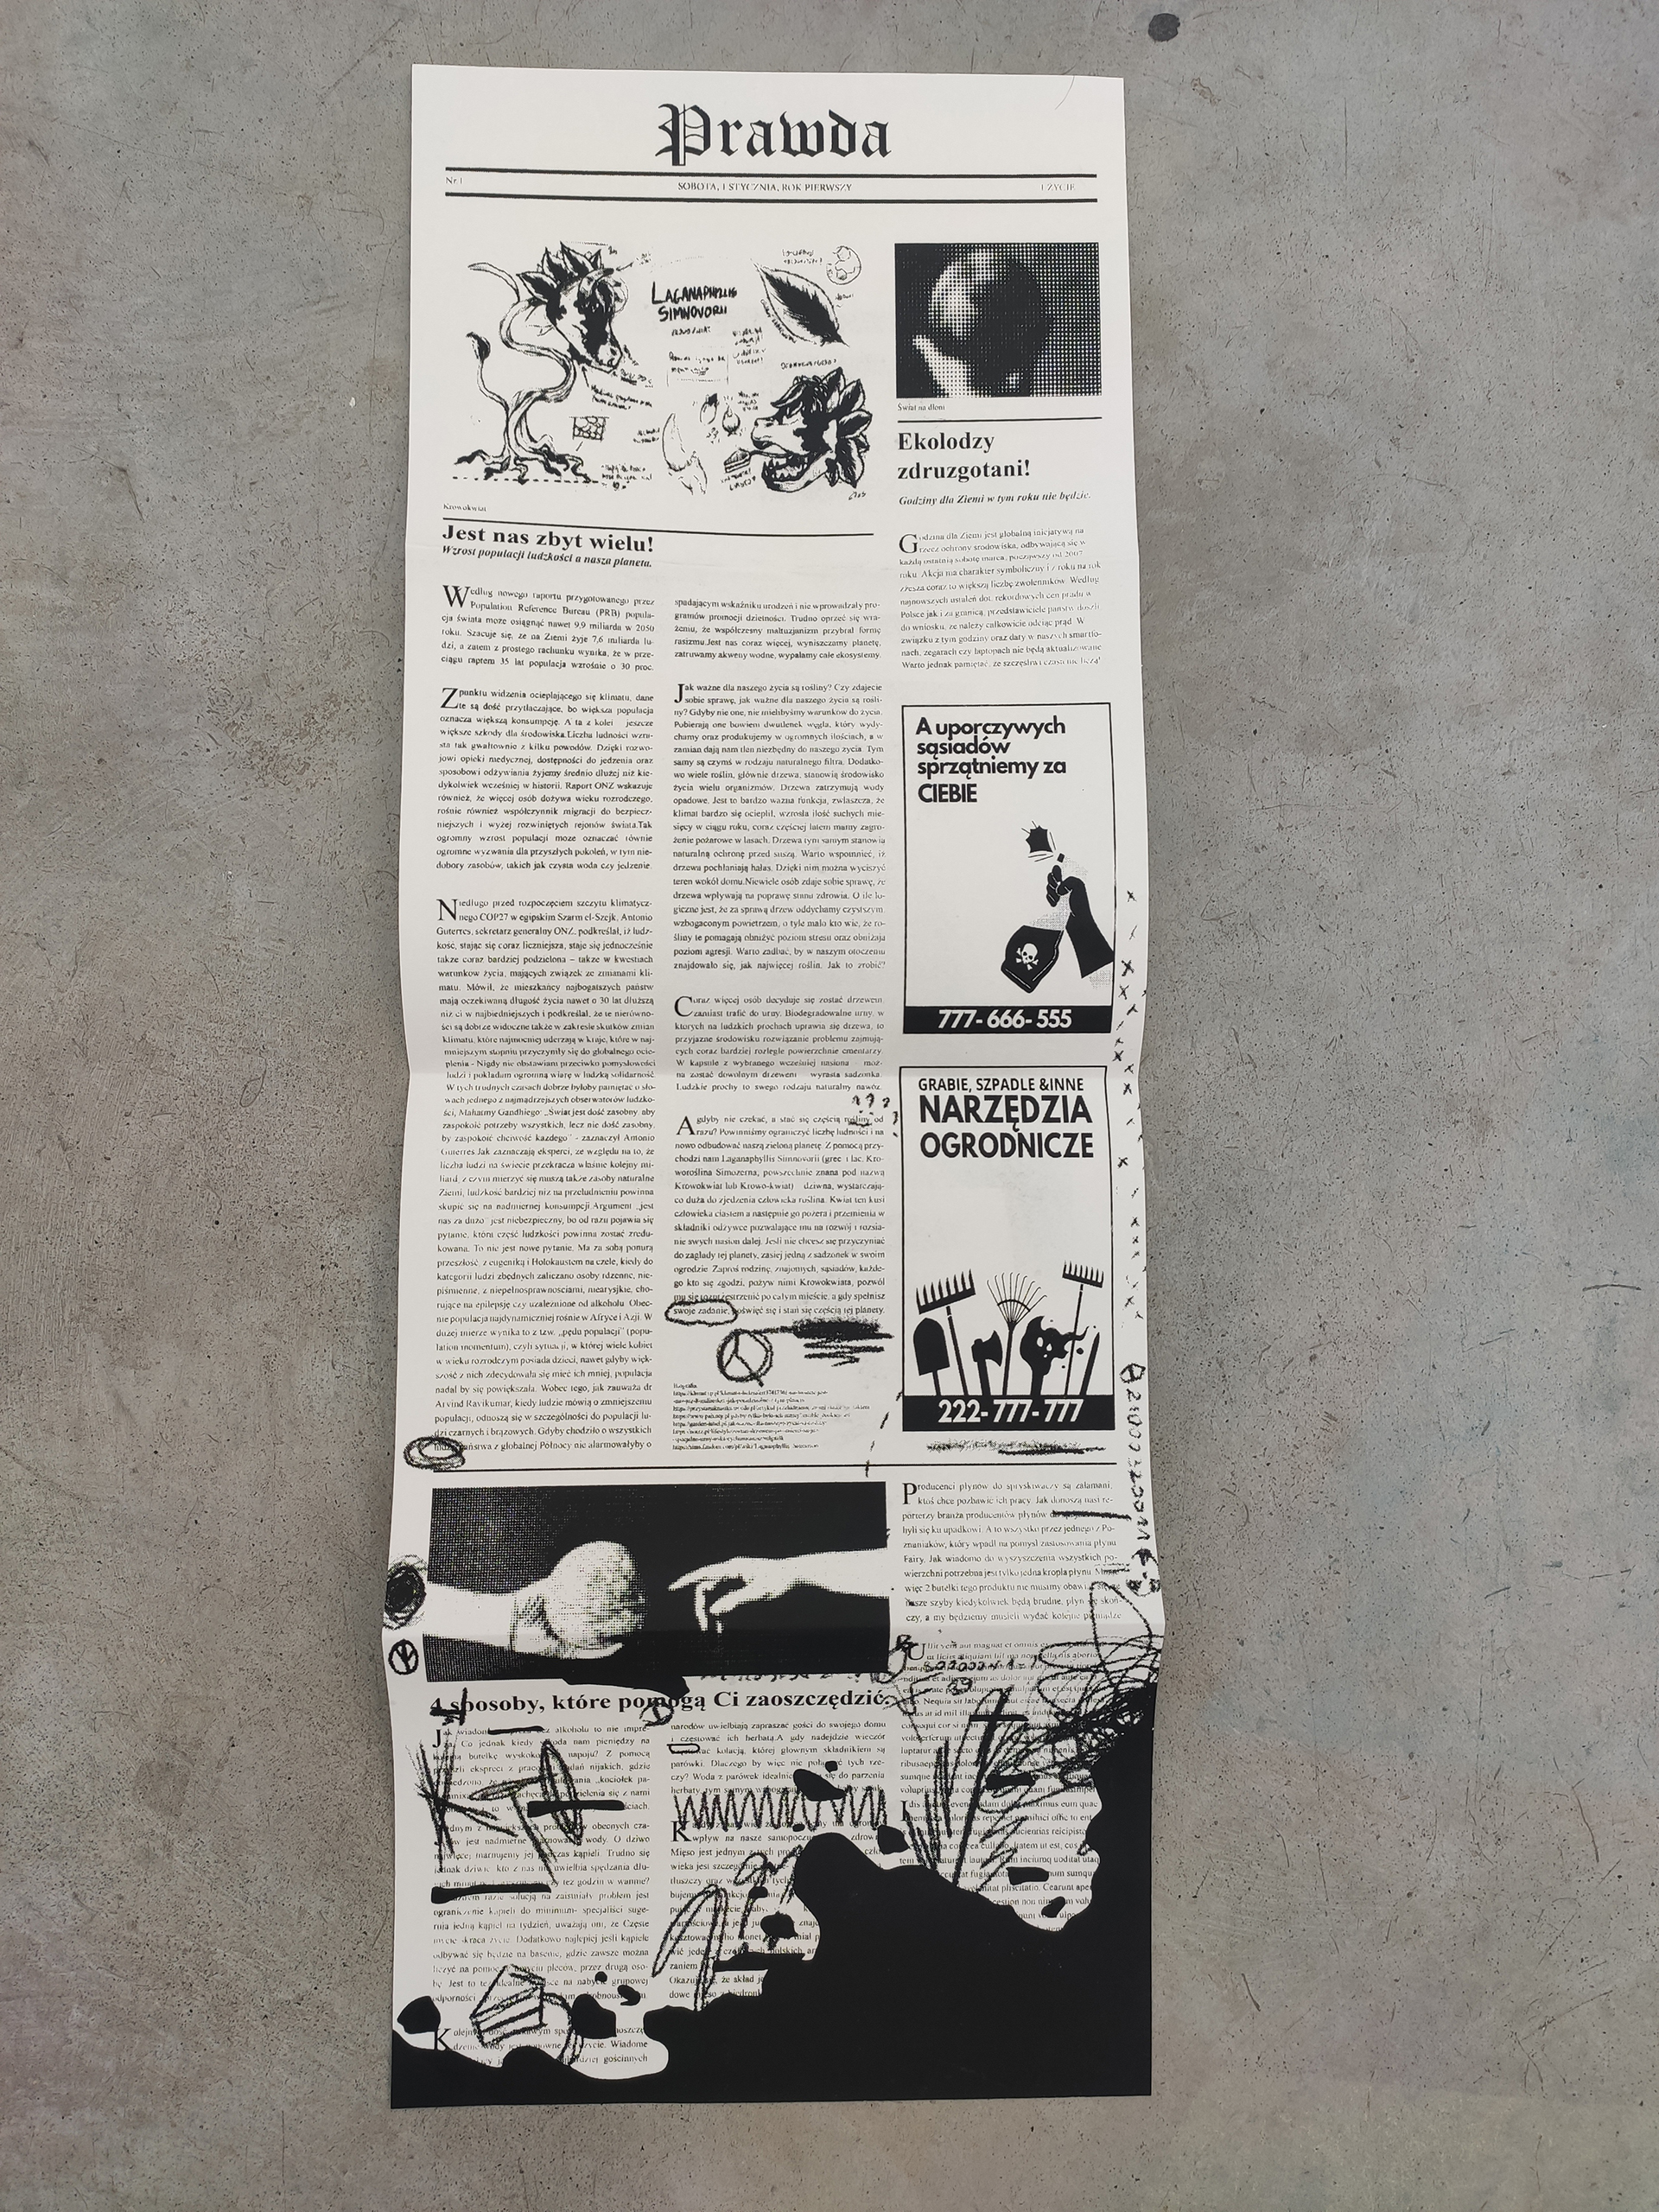 Fotografia przedstawia czarno białą gazetę w formie harmonijki rozłożoną i leżącą na betonowej podłodze.